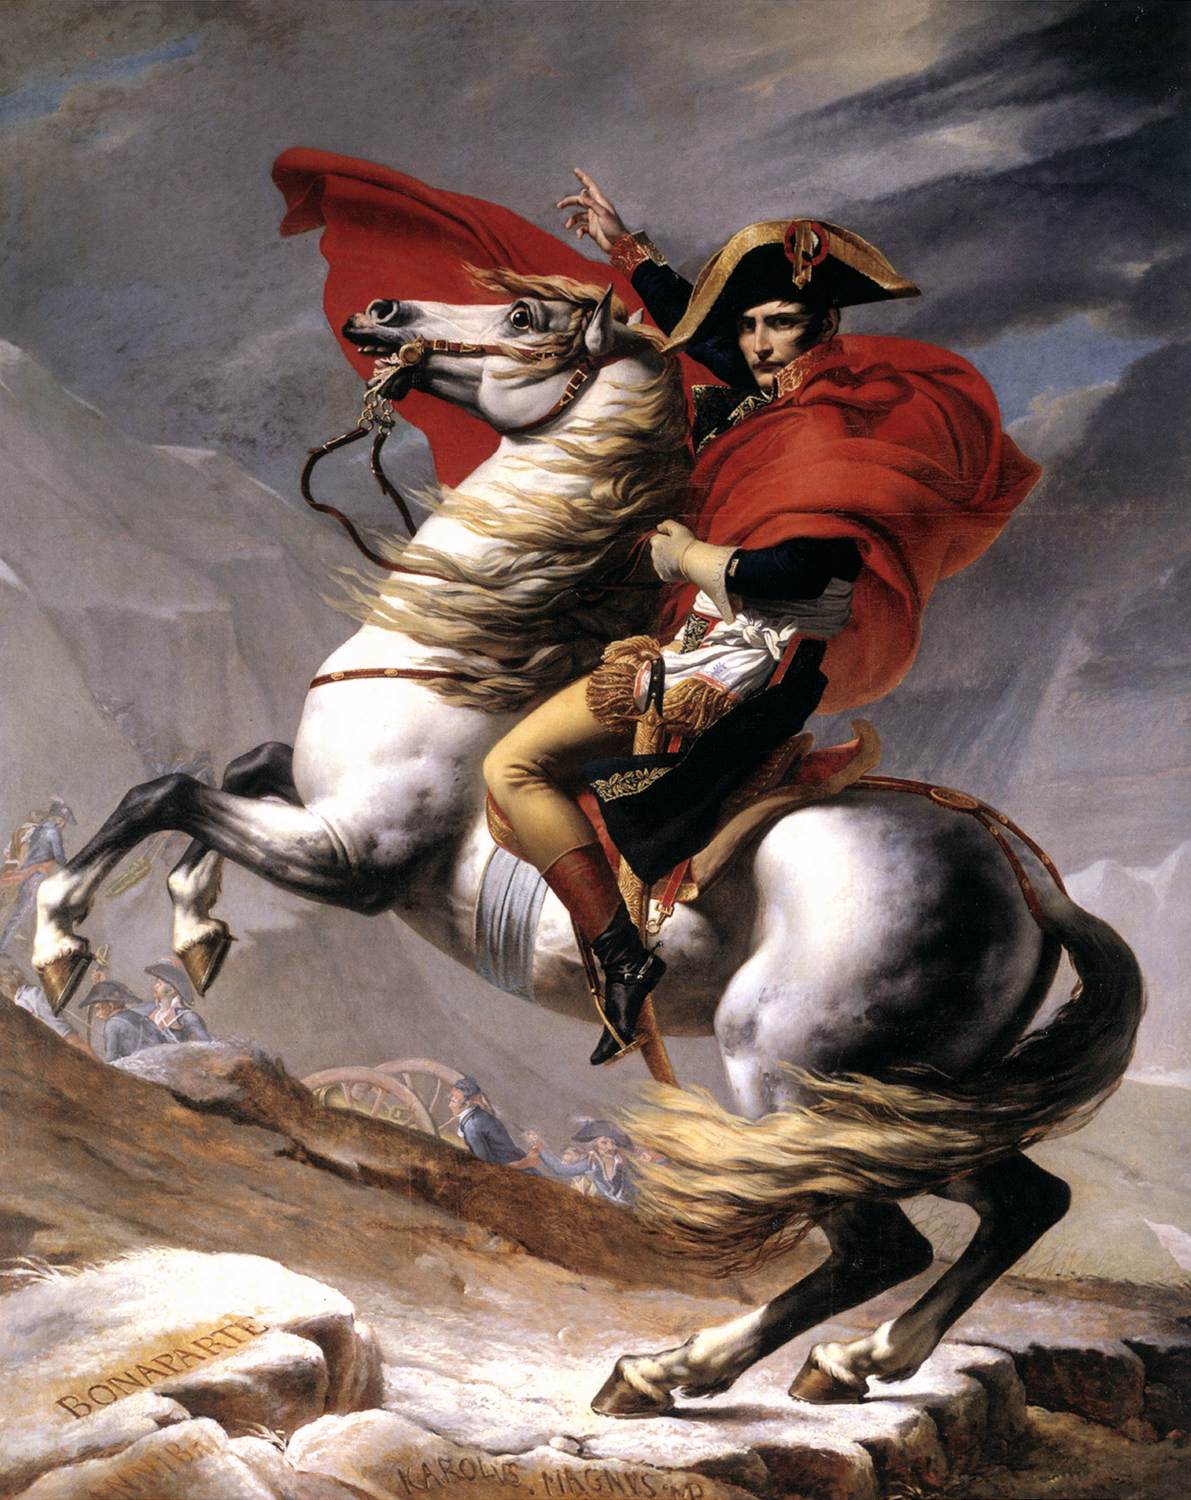 Bonaparte, spokój w płonącym rumaku, przekraczając Alpy